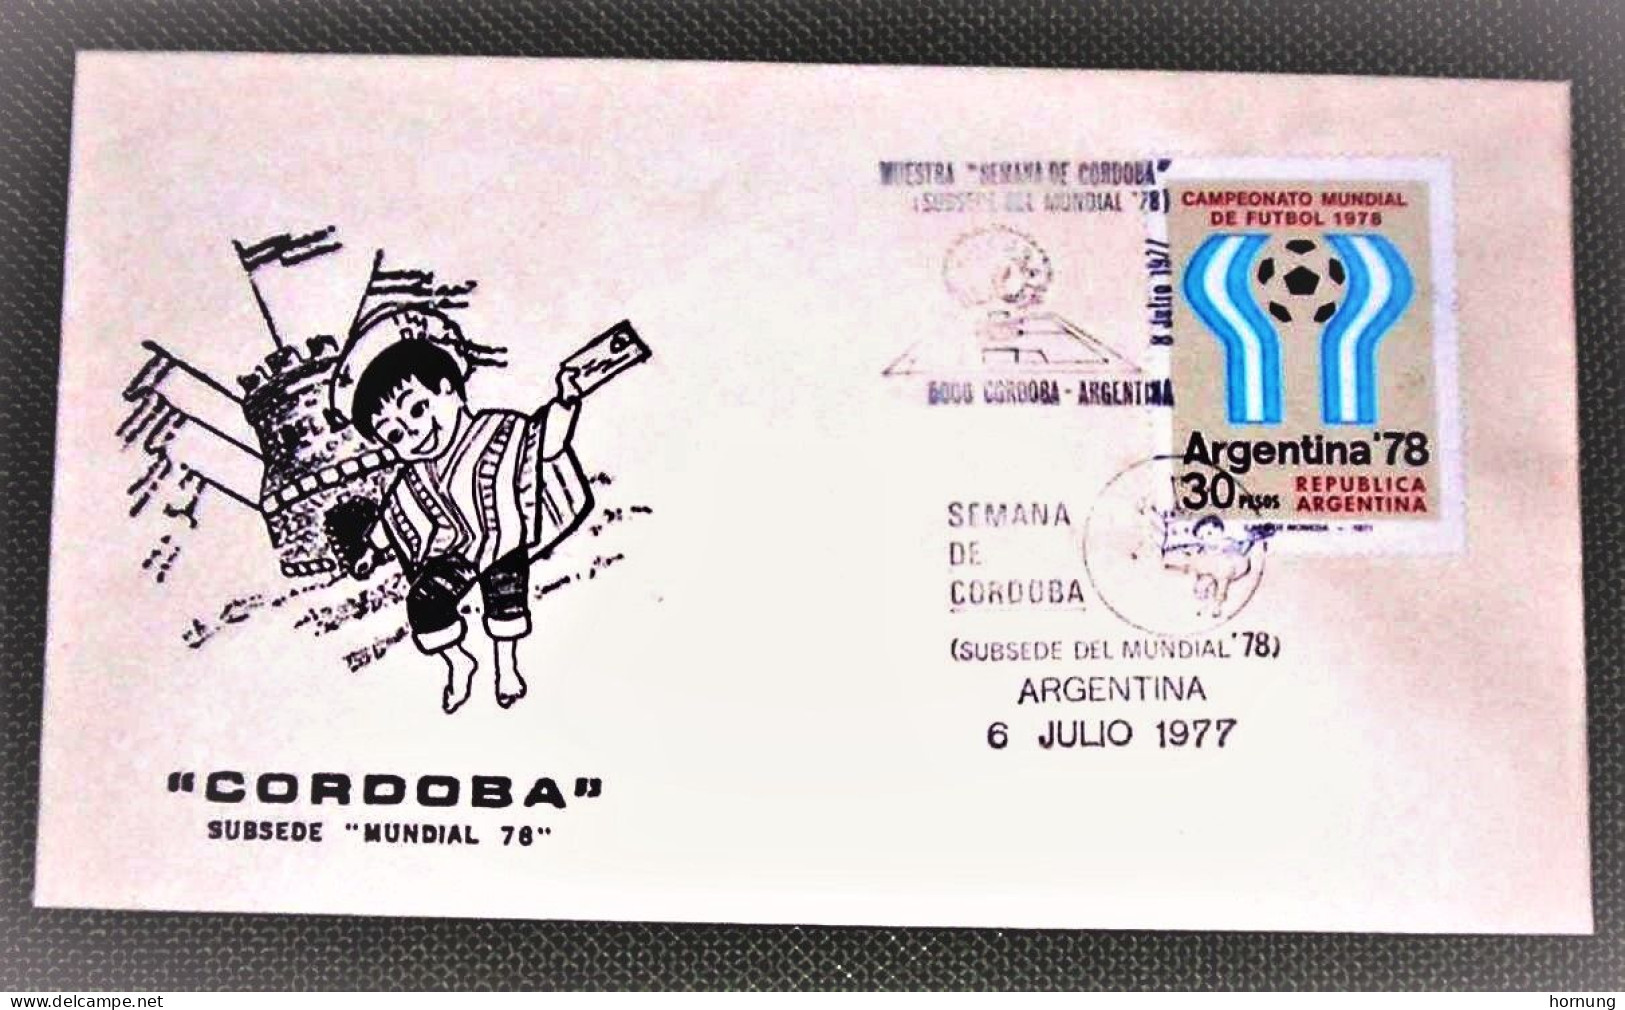 Argentina,1978,CORDOBA Subsede "MUNDIAL 78 ", ARGENTINA  6 JULIO 1977. - Gebruikt